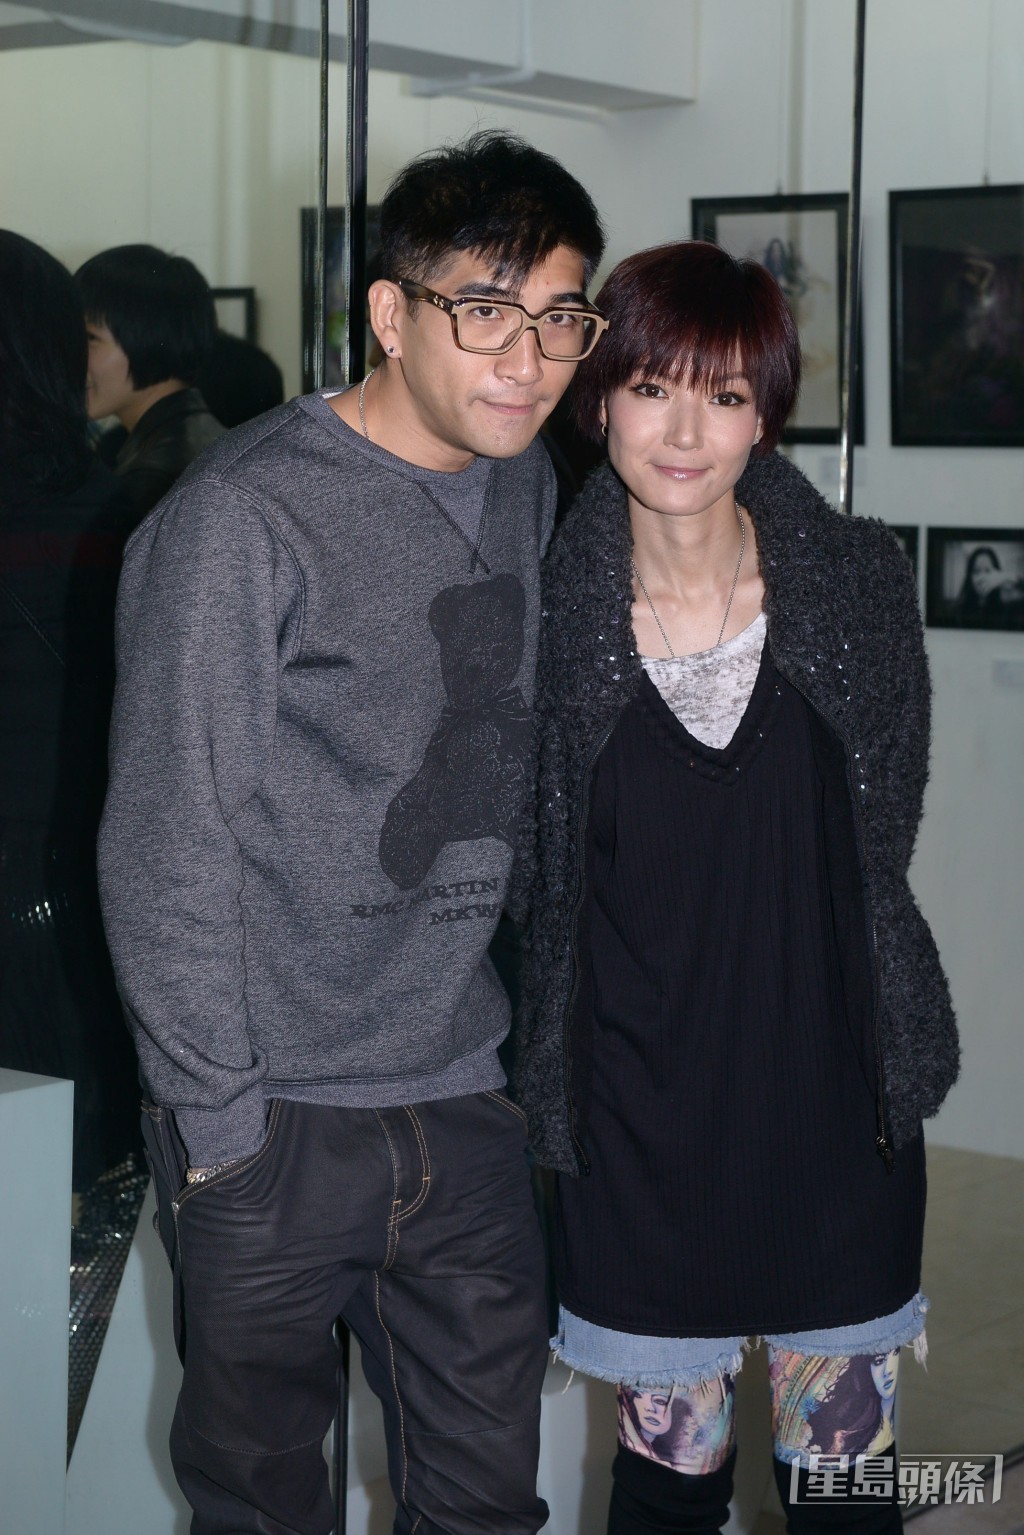 卢巧音在2013年与Kolor主音Sammy苏浩才结婚。